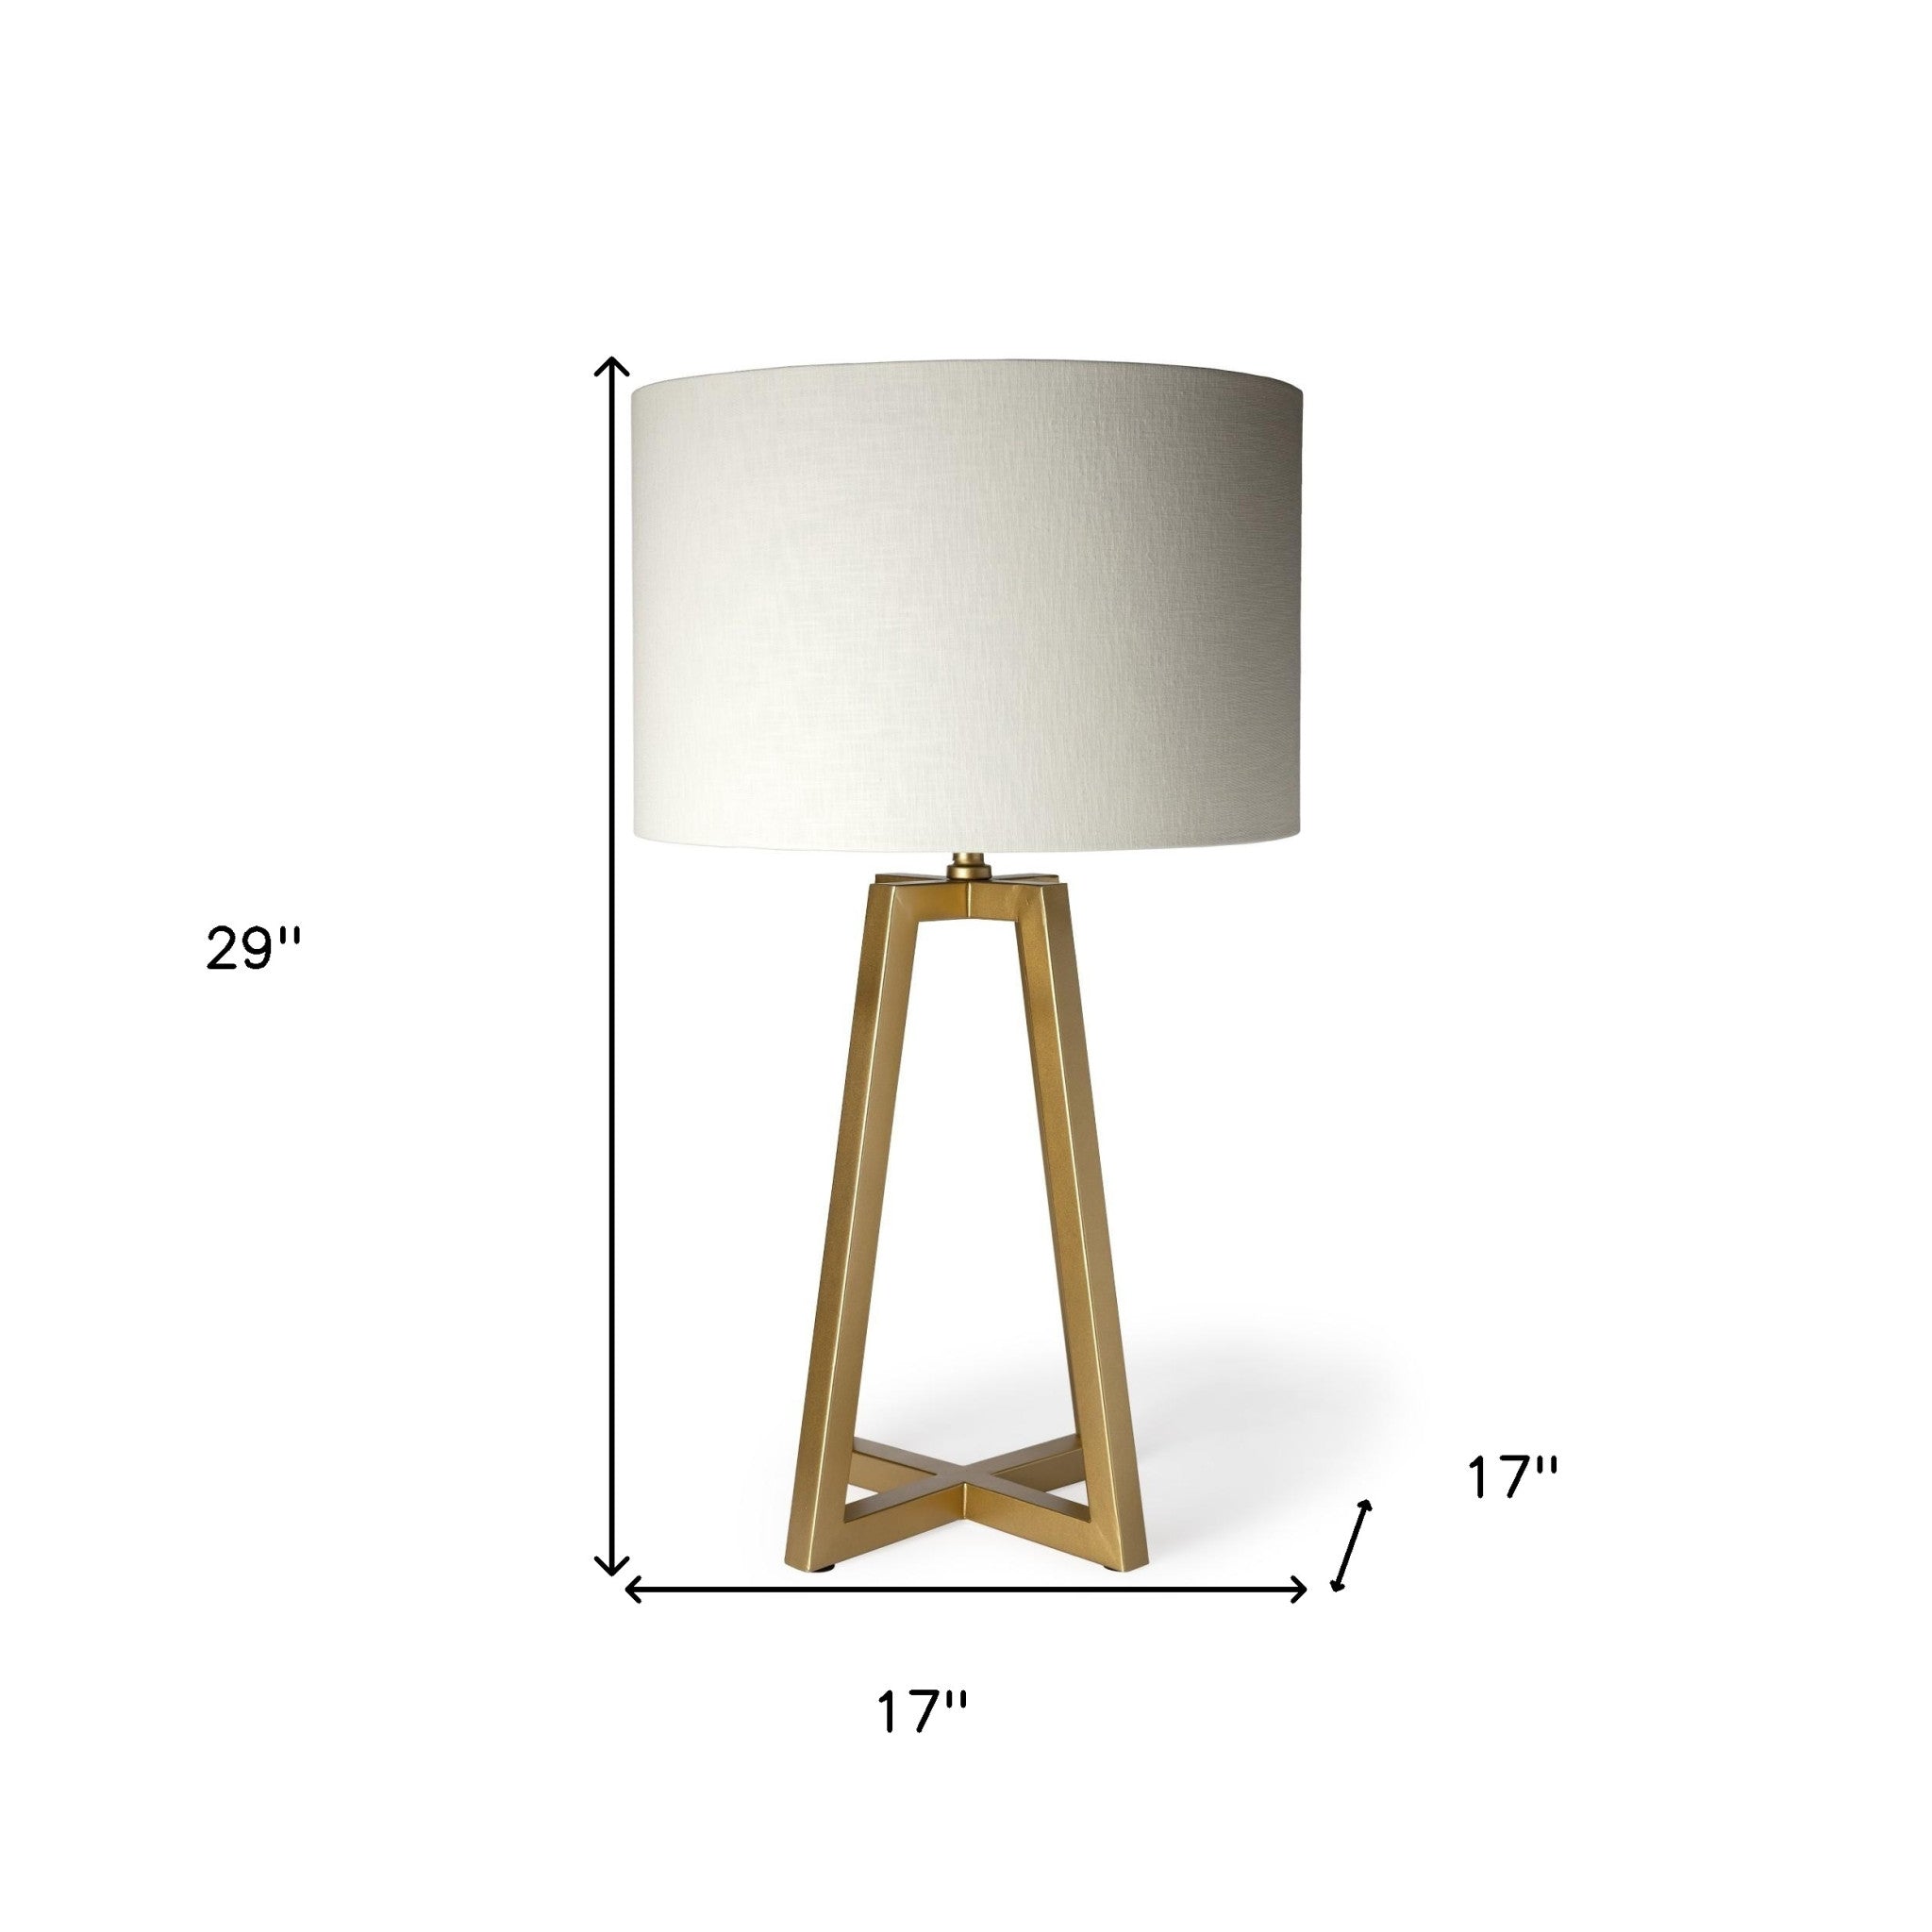 Metallic Gold Tone Geometric Table Lamp